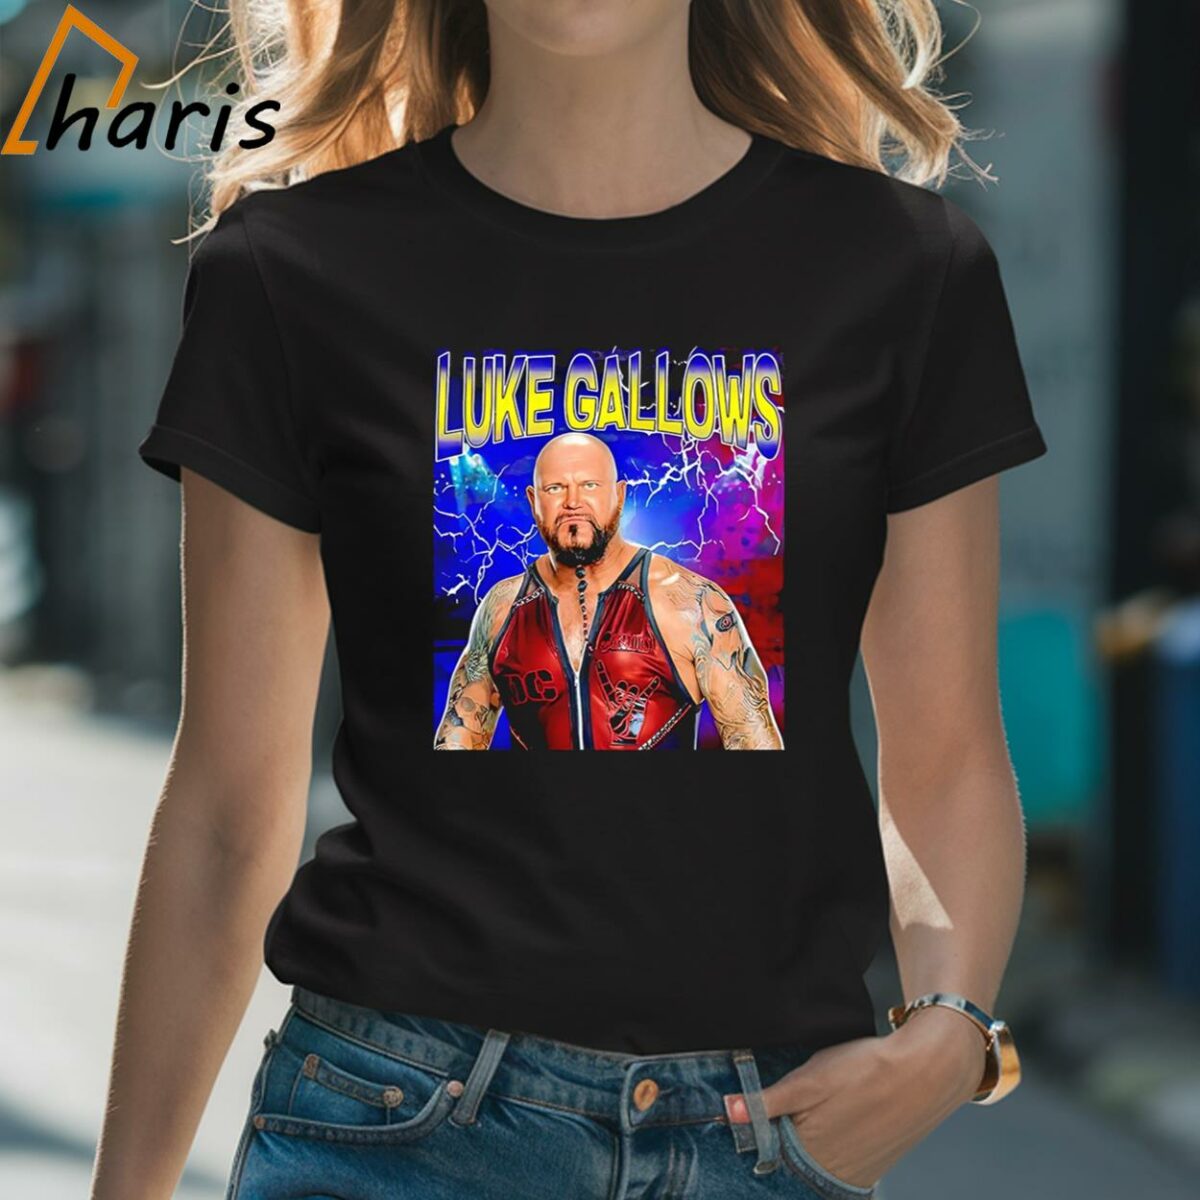 Luke Gallows Lightning Shirt 2 Shirt